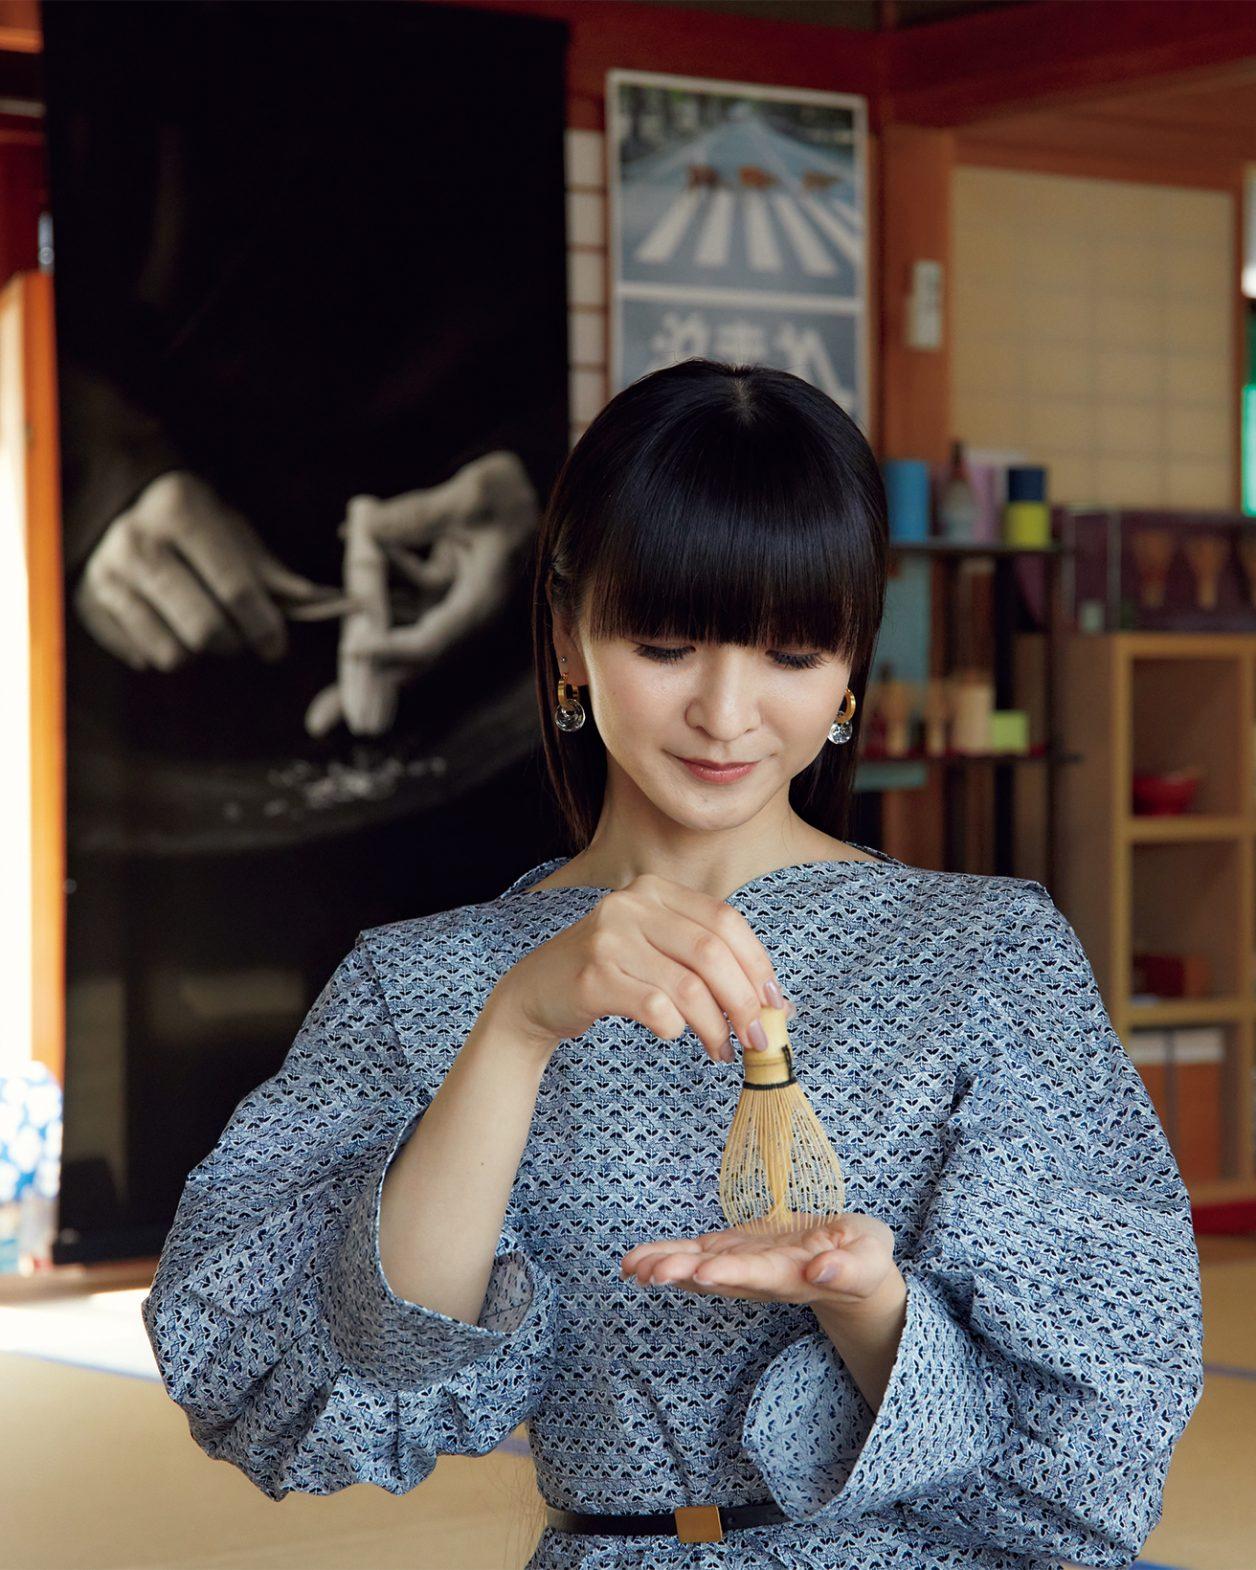 Kokontozai: KASHIYUKA’s Shop of Japanese Arts and Crafts — Hachiku Tea Whisk